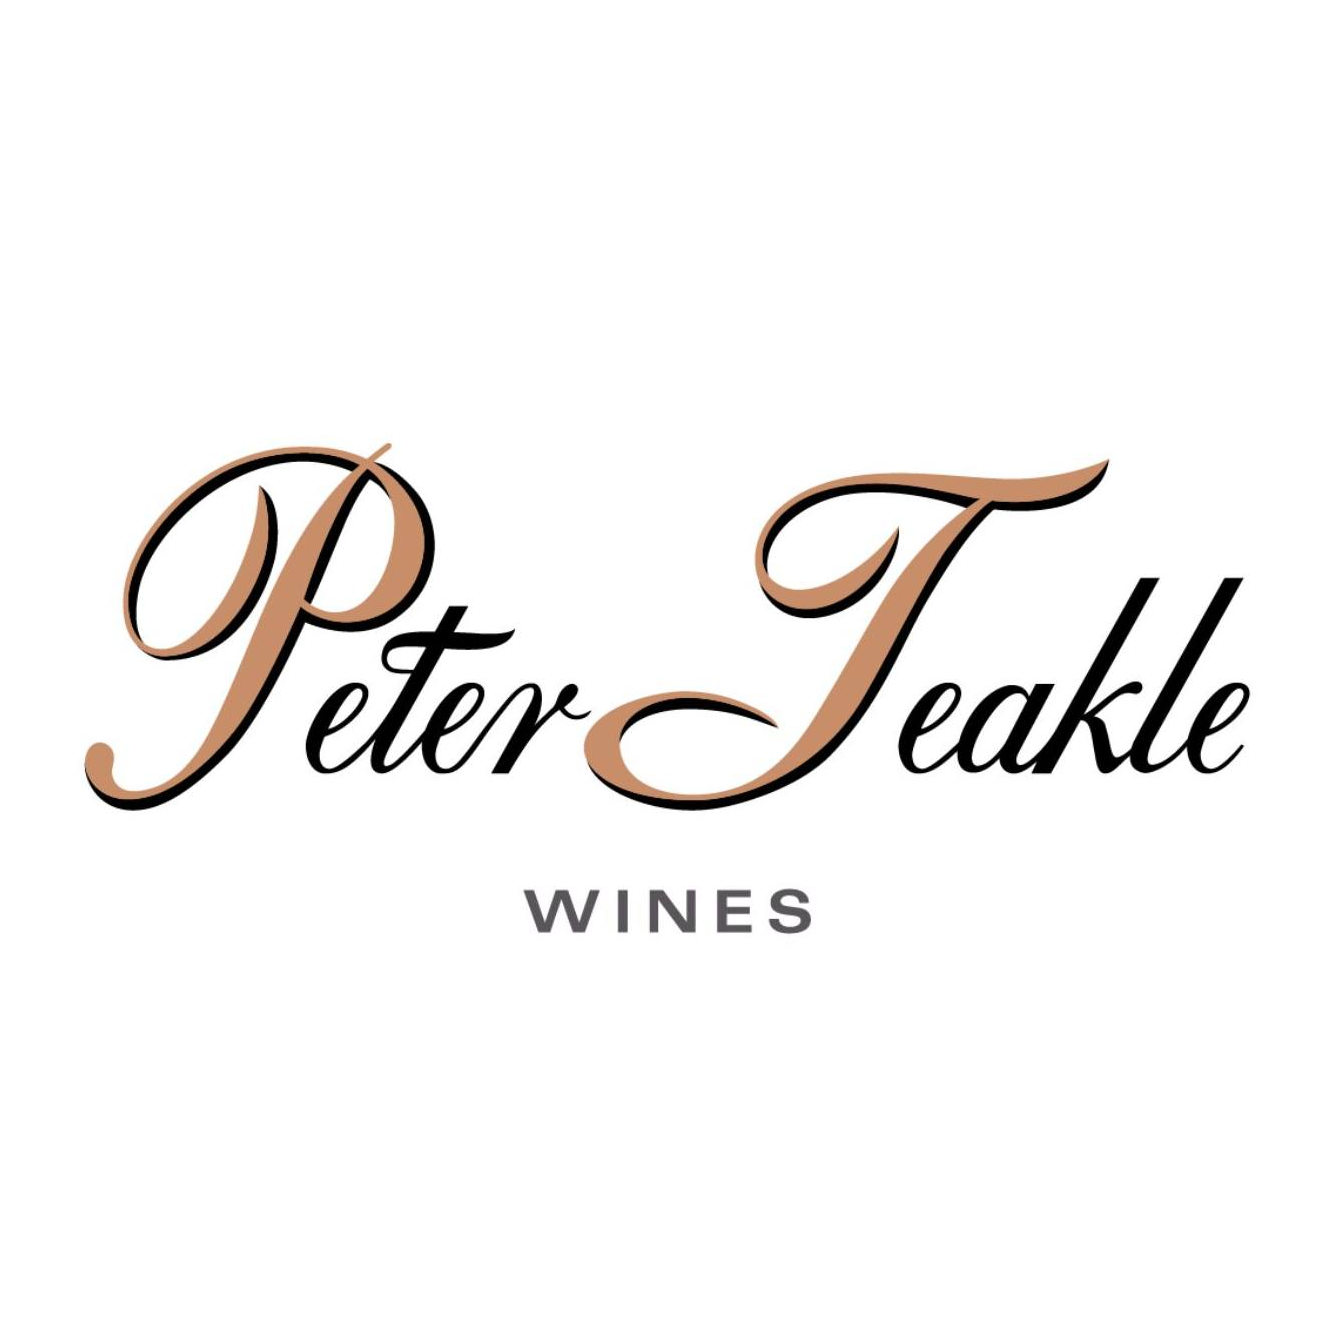 Peter Teakle Wines